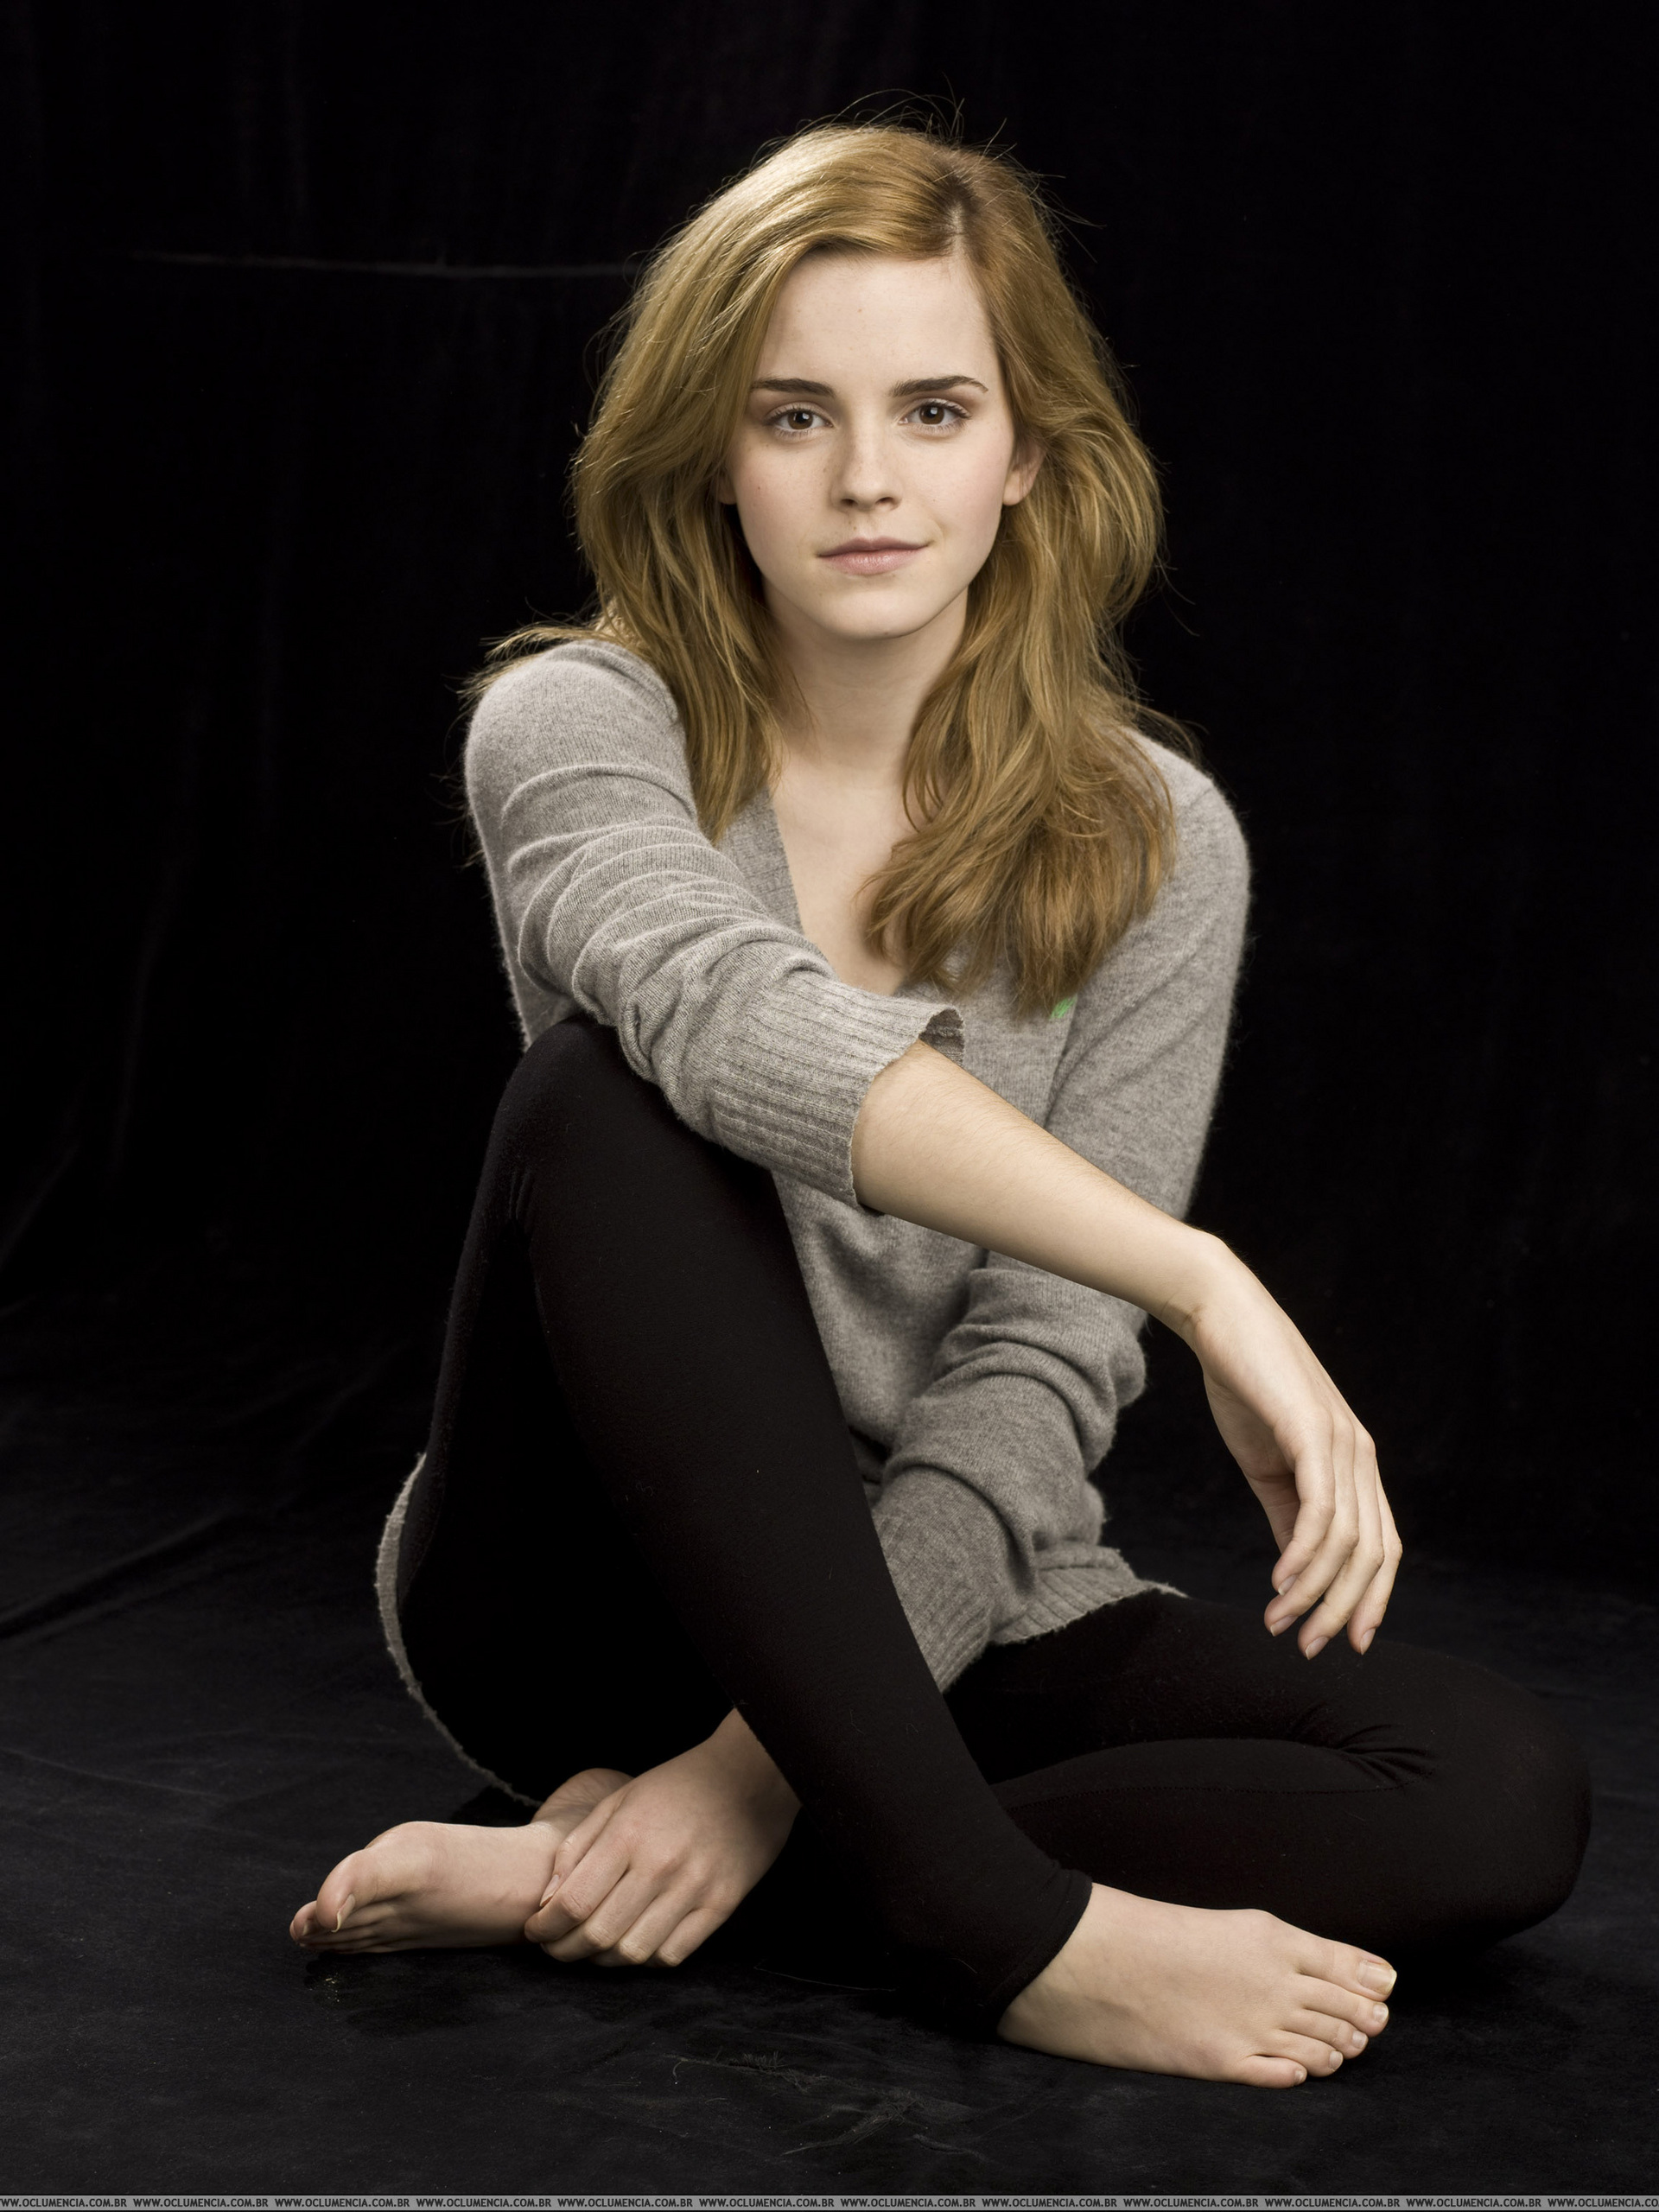 Lesbian Porn Emma Watson - Emma Watson Appreciation Thread - Page 5 - Blu-ray Forum